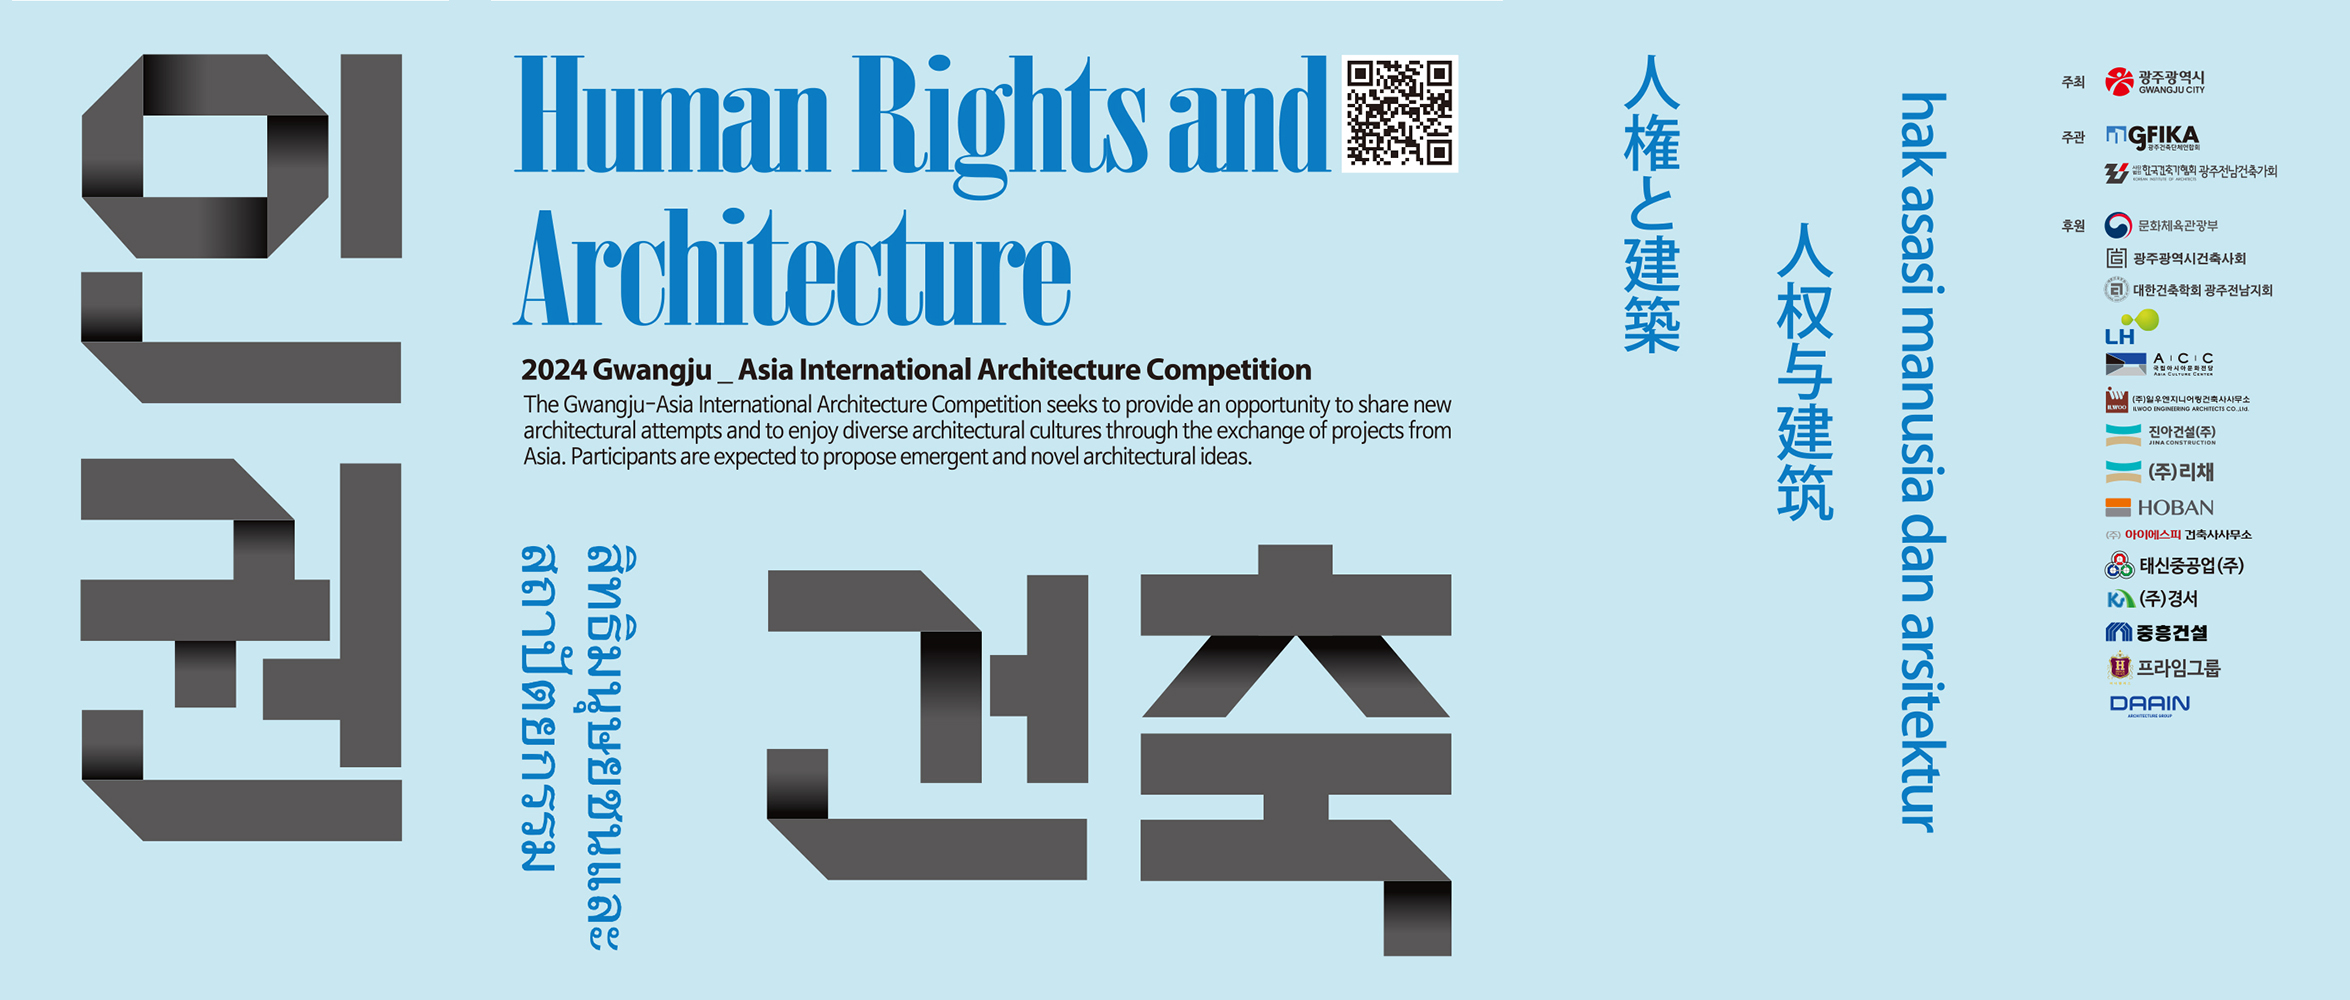 2024 光州亚洲国际建筑竞赛——人权与建筑